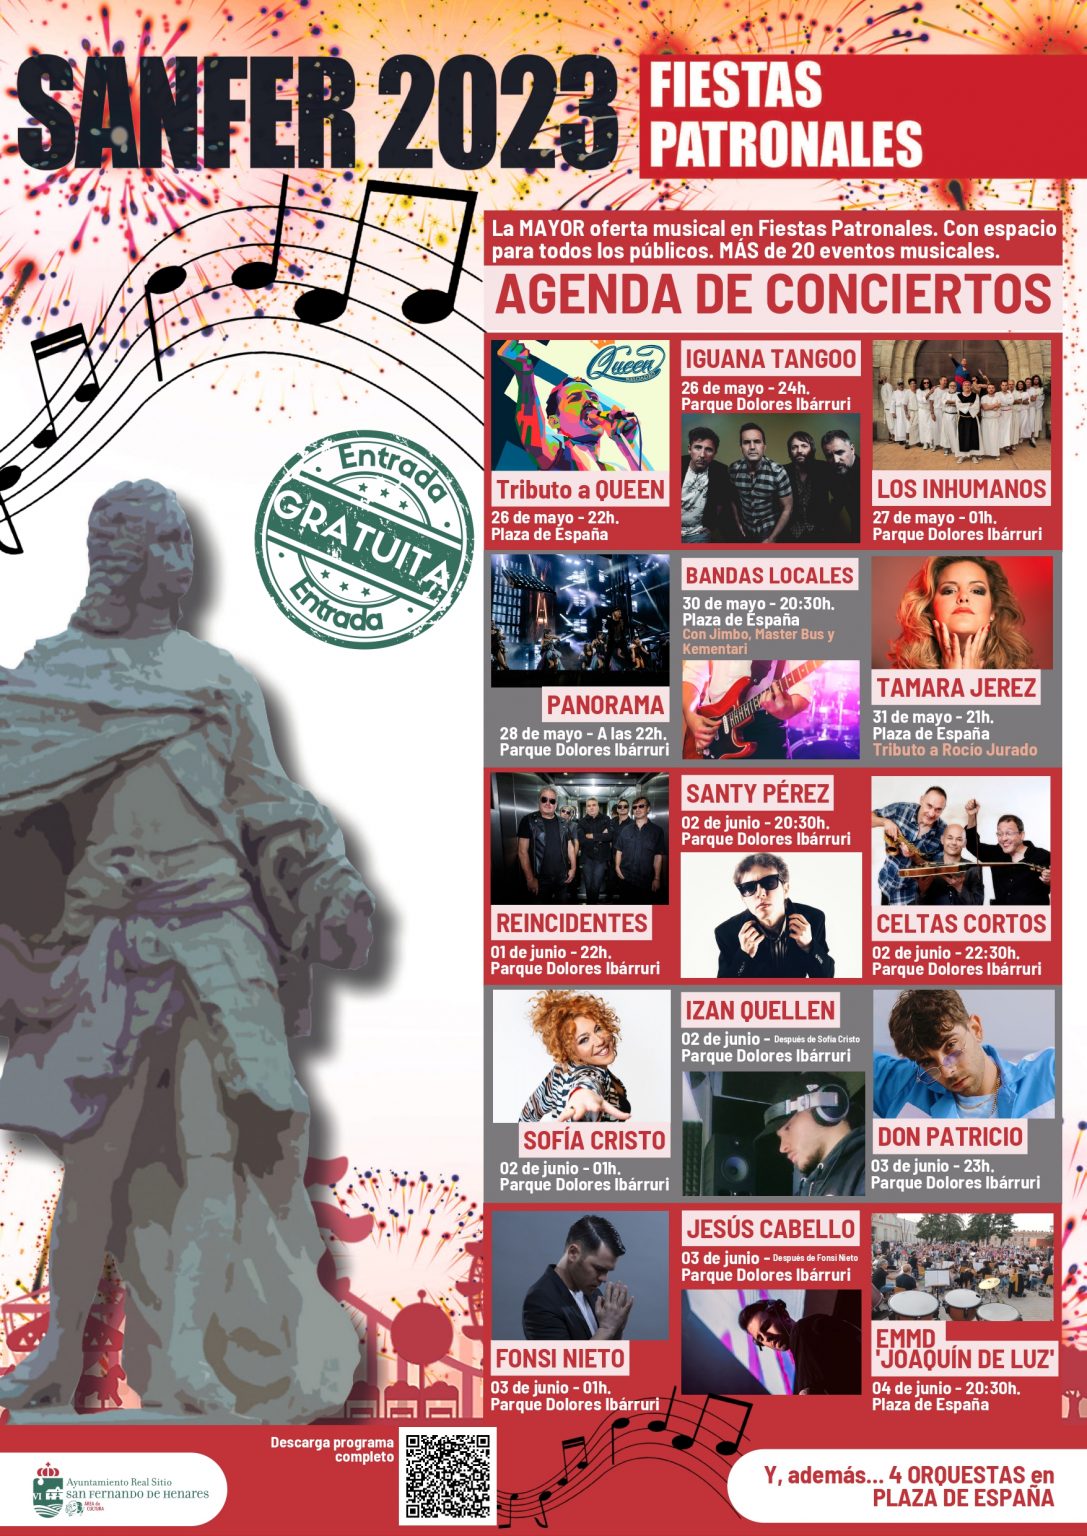 Fiestas y conciertos gratuitos en Madrid - Página 2 Fwt4by_X0AE2n9d-1087x1536